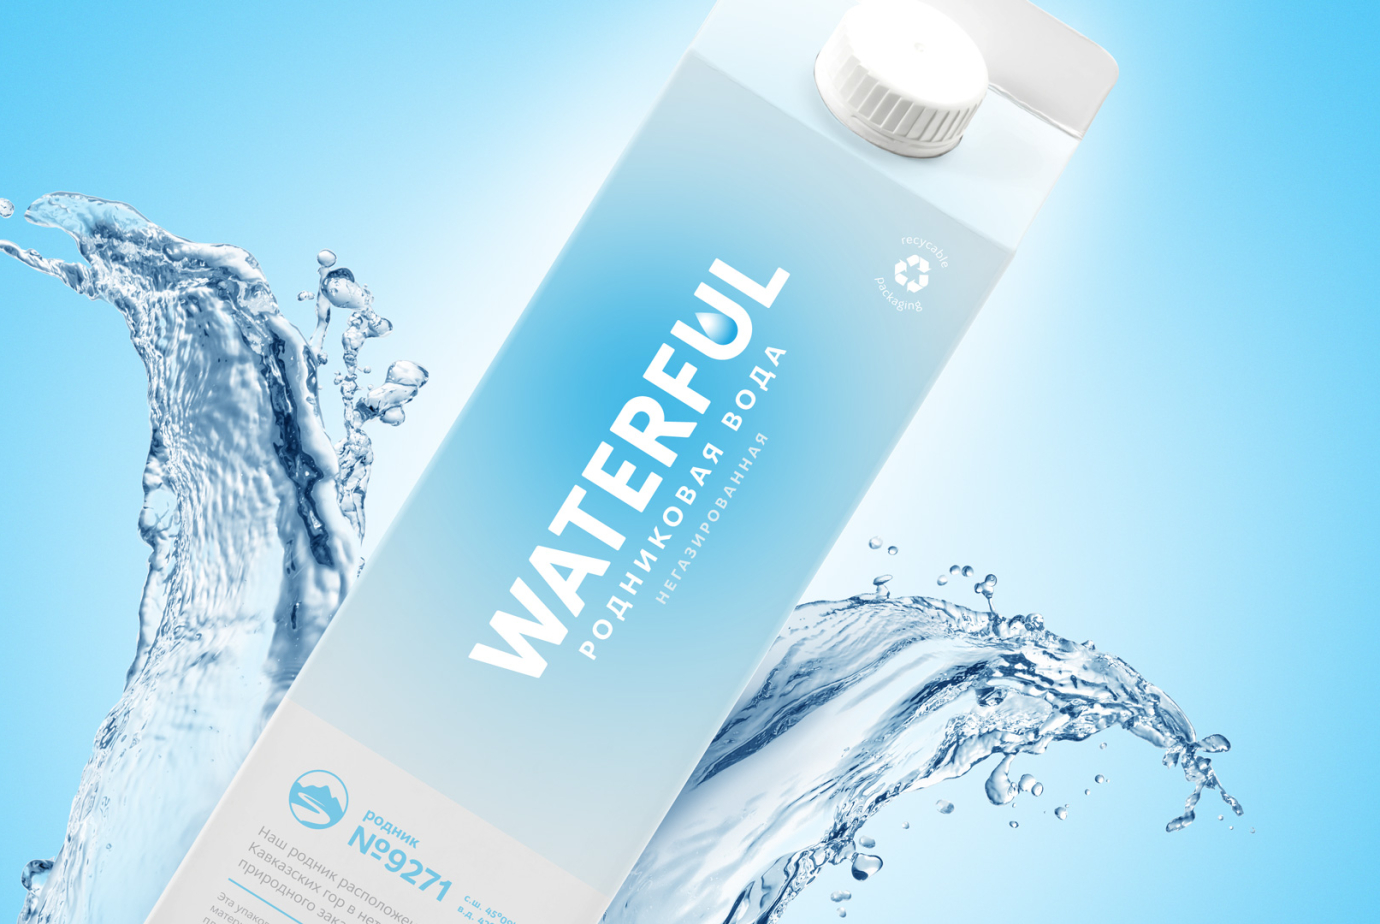 Брендинг Watelful — в сегменте питьевой воды